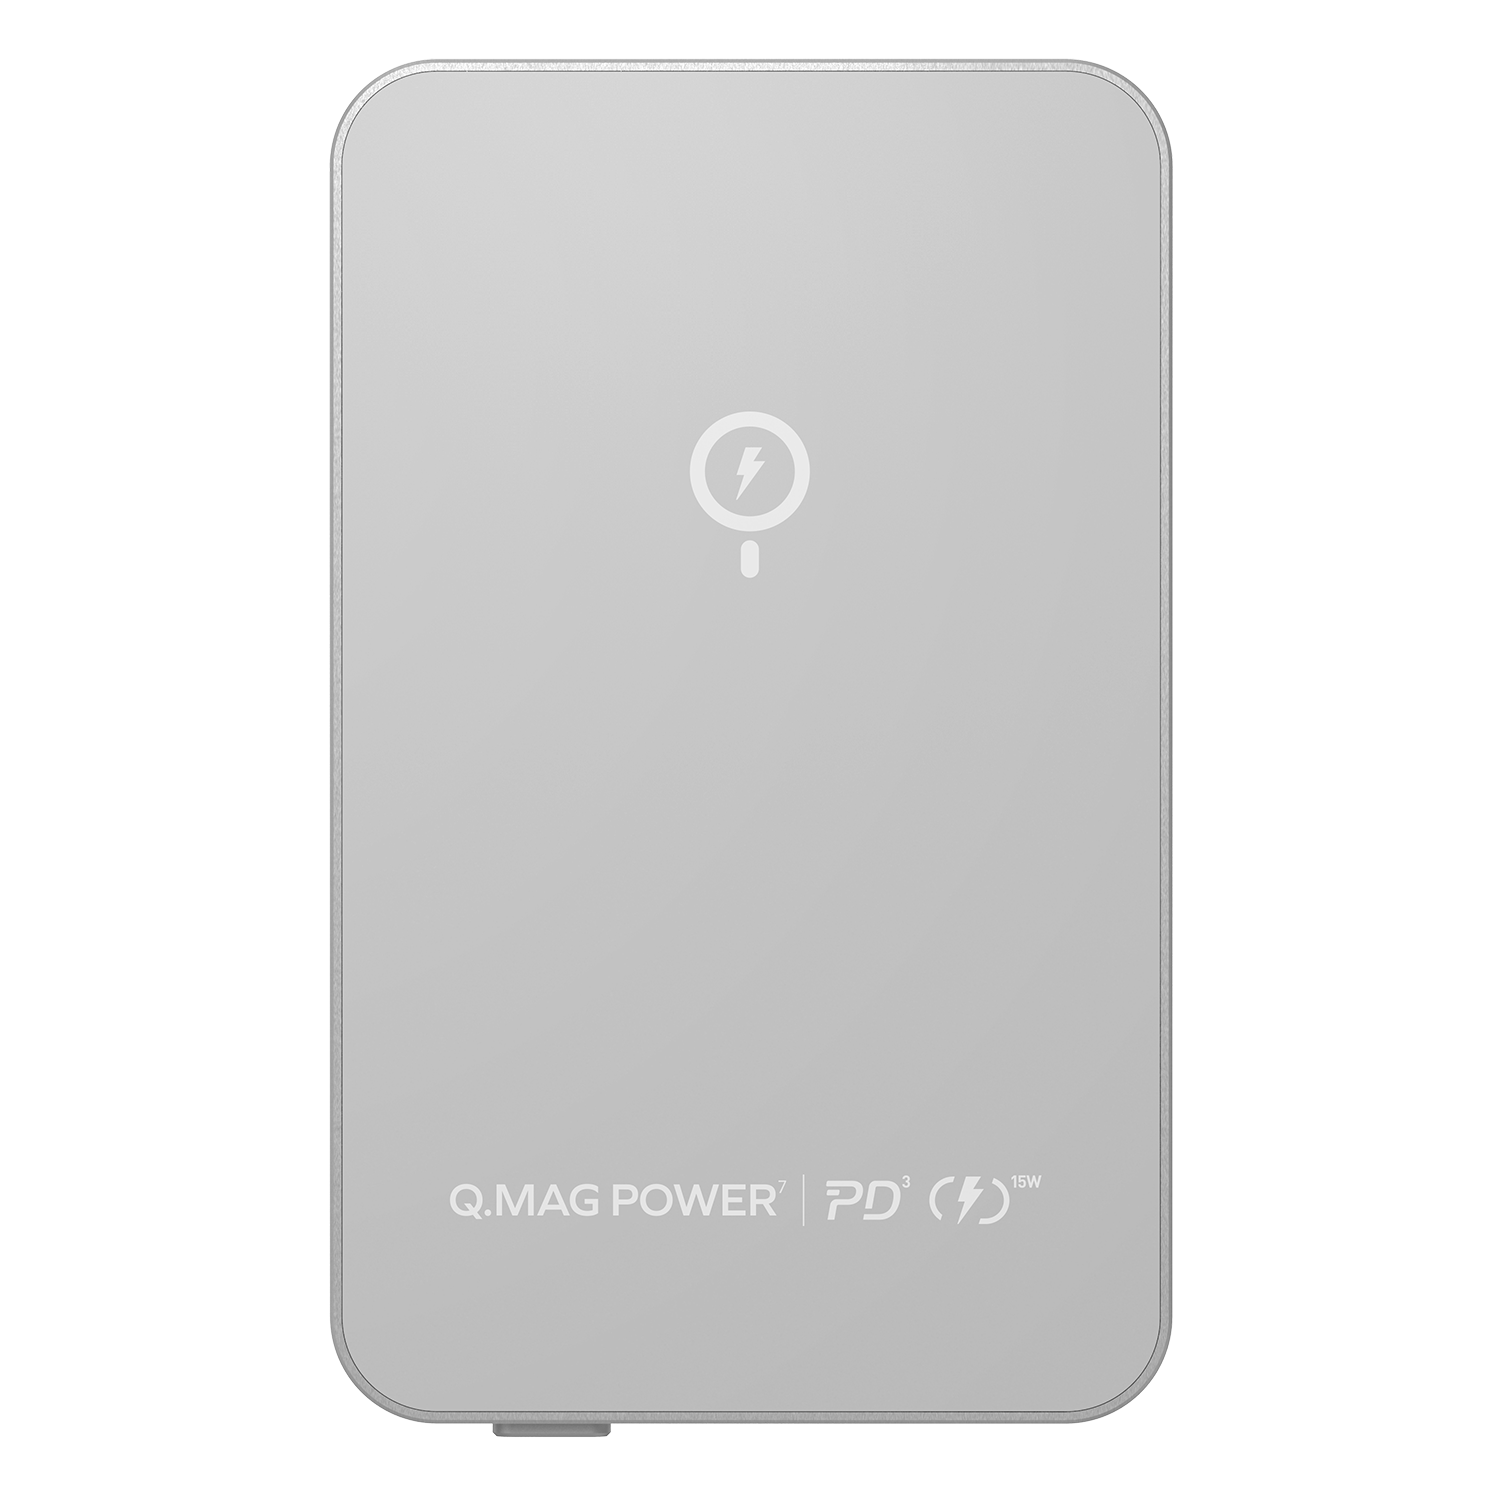 Momax Q.MAG Power 7 Wireless MagSafe Power Bank 10000mAh